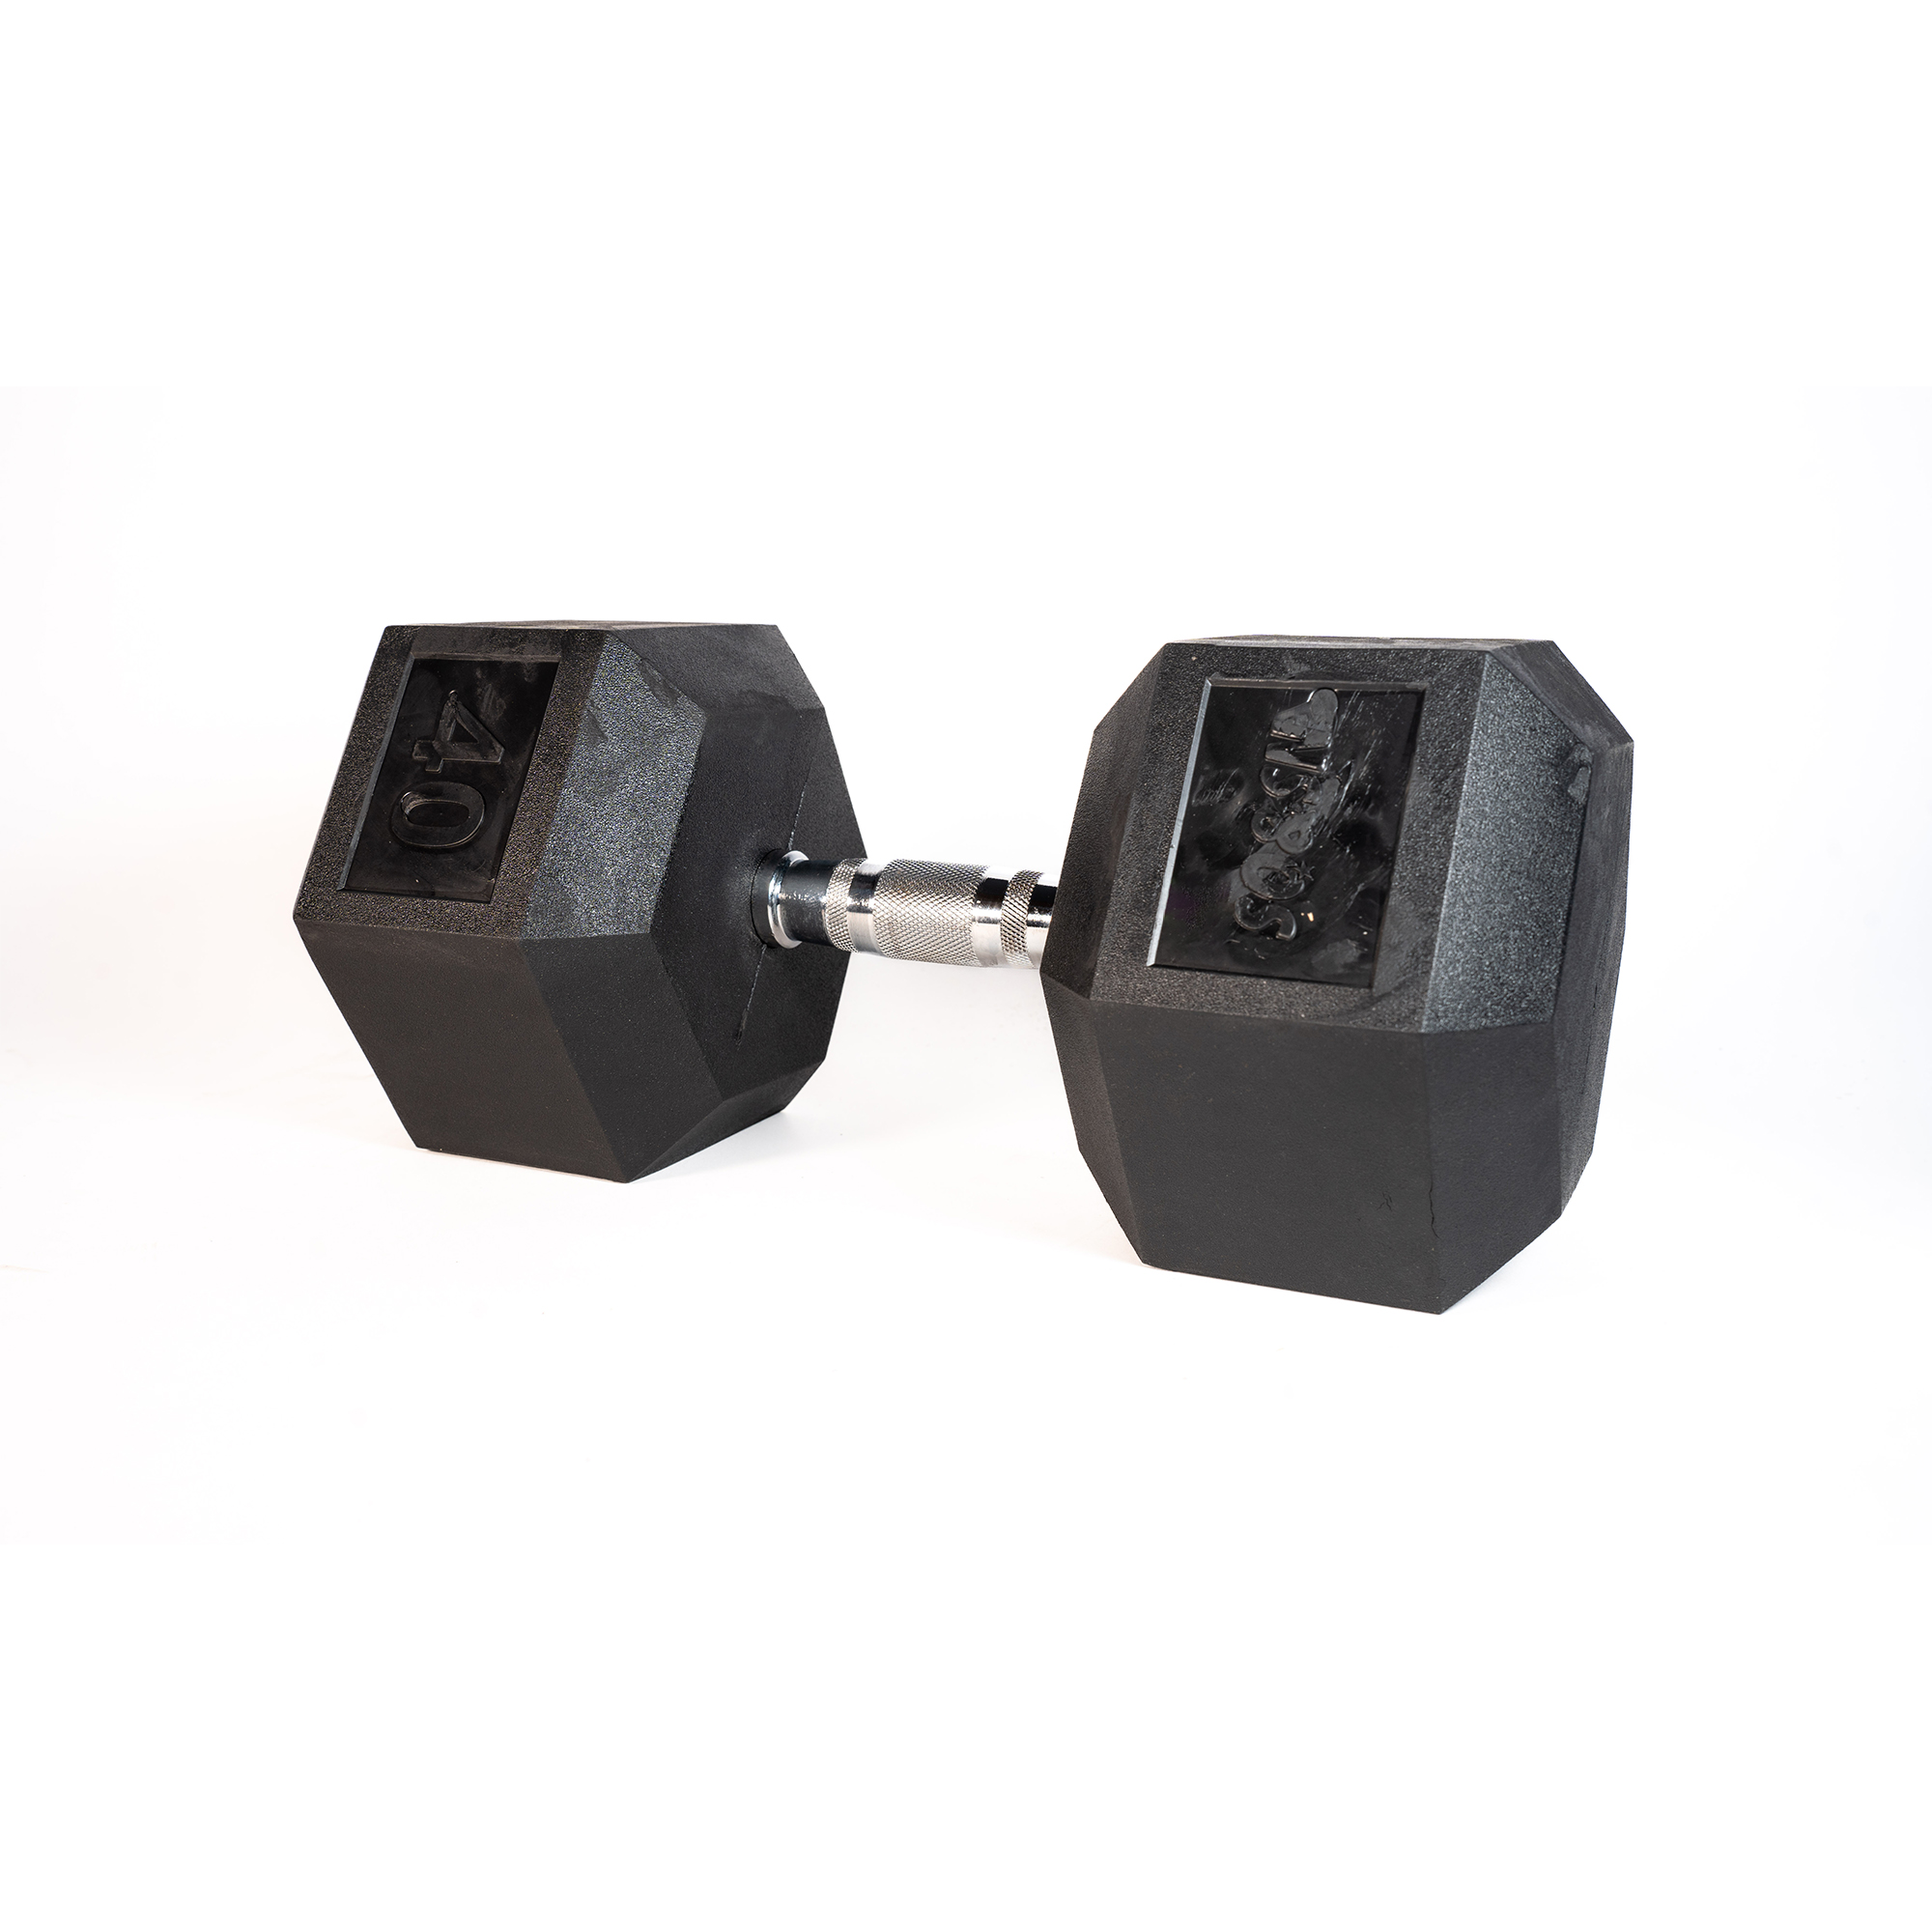 Brug SQ&SN Hexagon Håndvægt (40 kg) med forkromet greb. Udstyr til crossfit træning, styrketræning og funktionel træning til en forbedret oplevelse